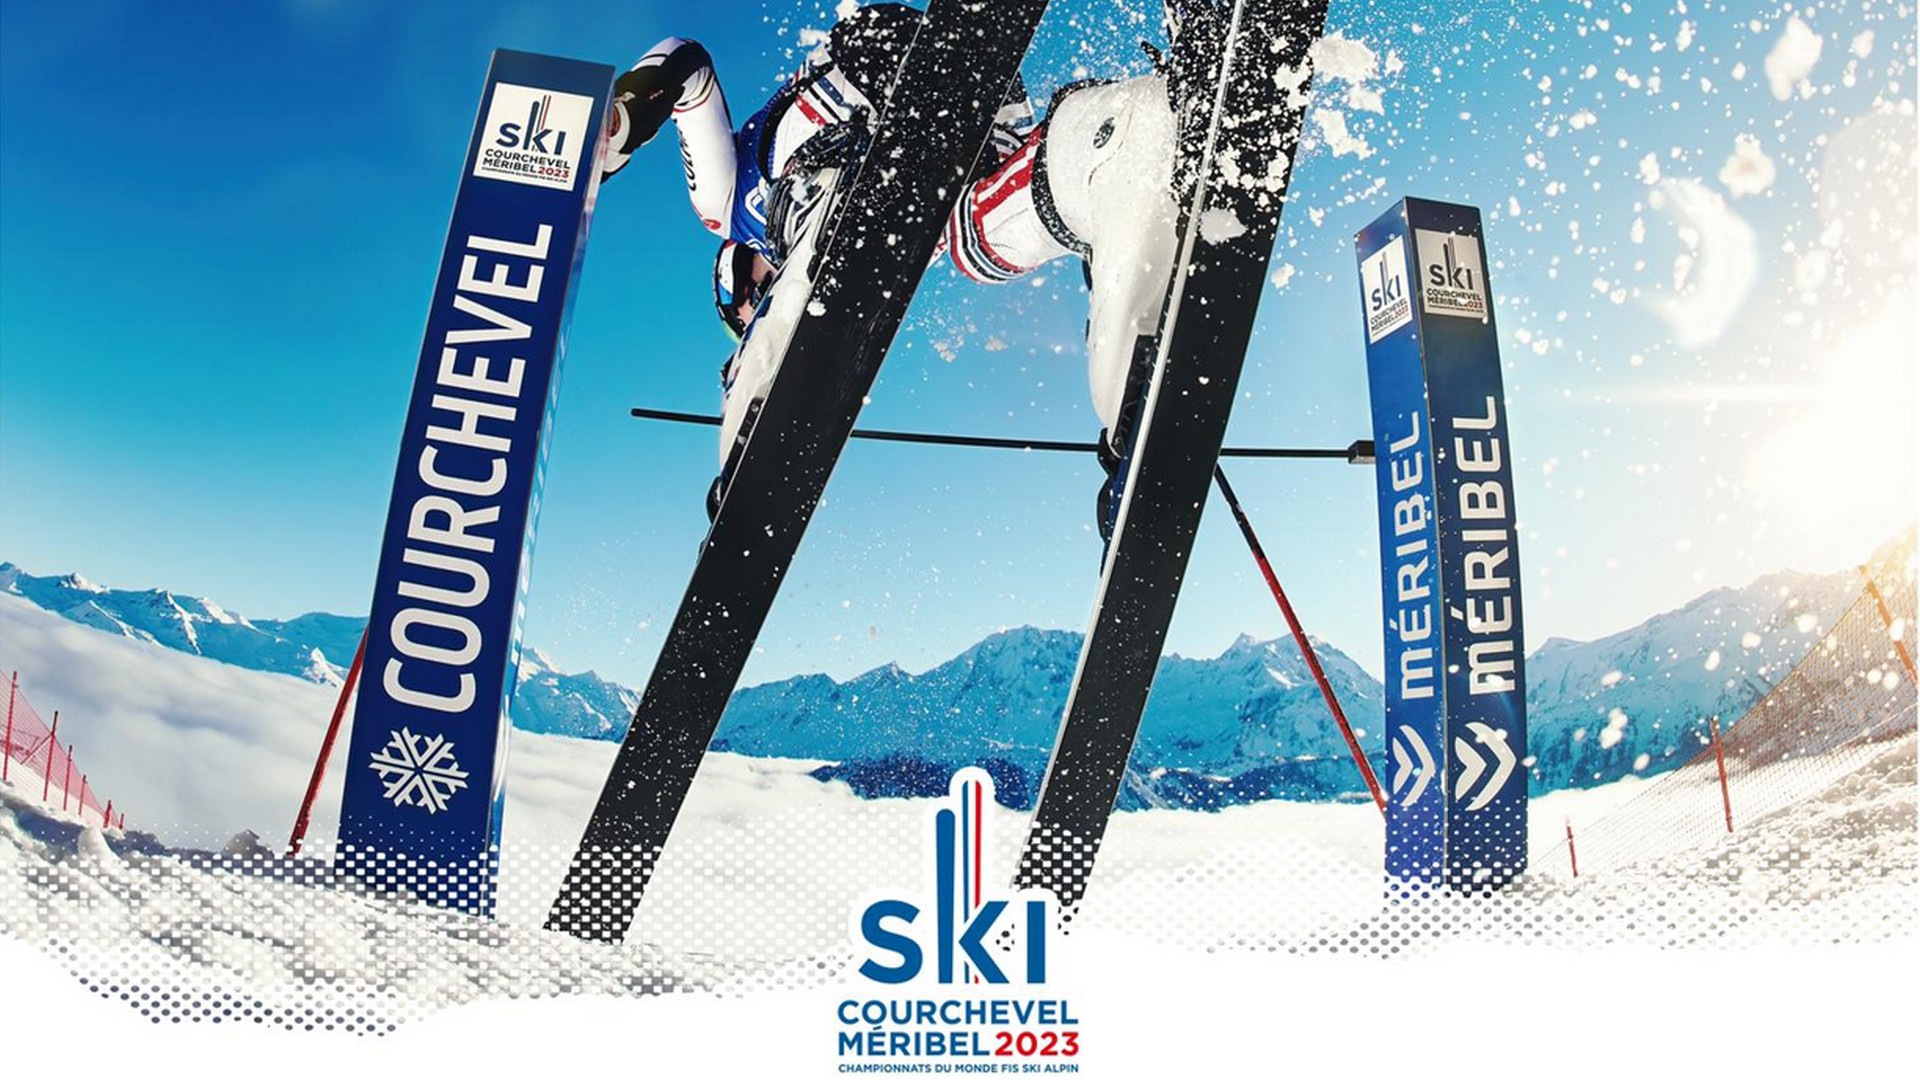 Ski – Courchevel Meribel 2023